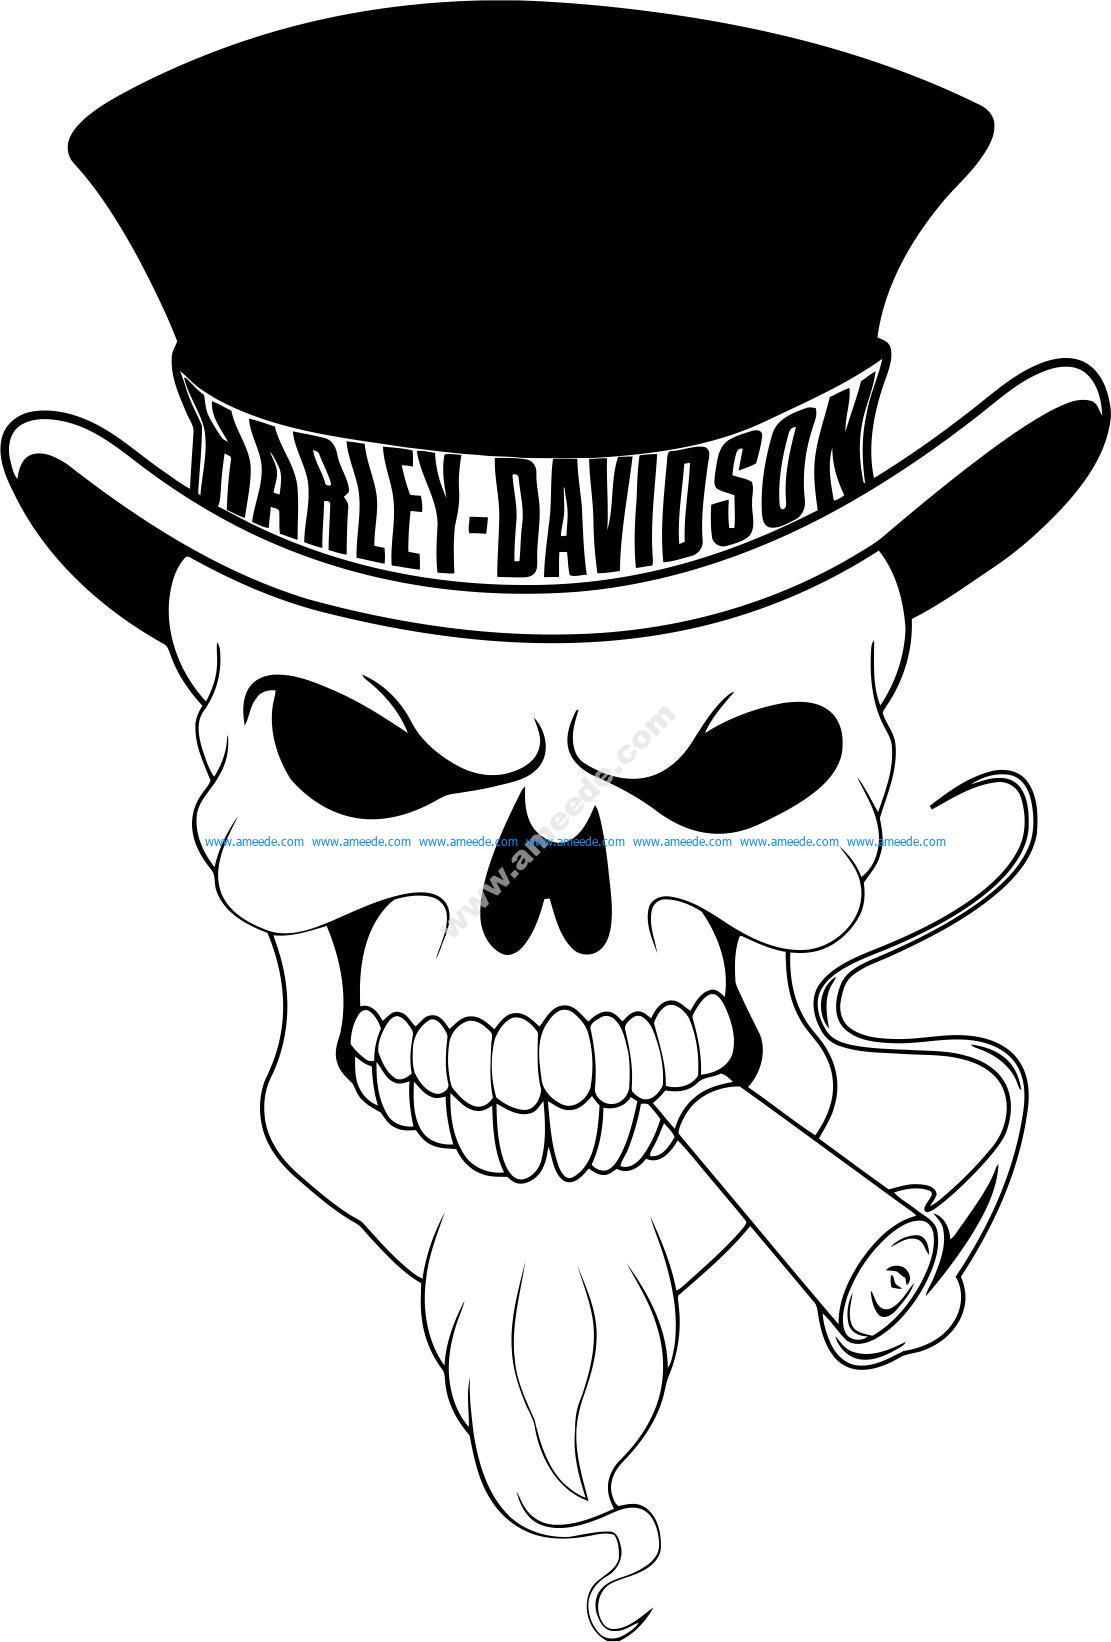 Harley Davidson Skull Logo Vector – Motorcylce